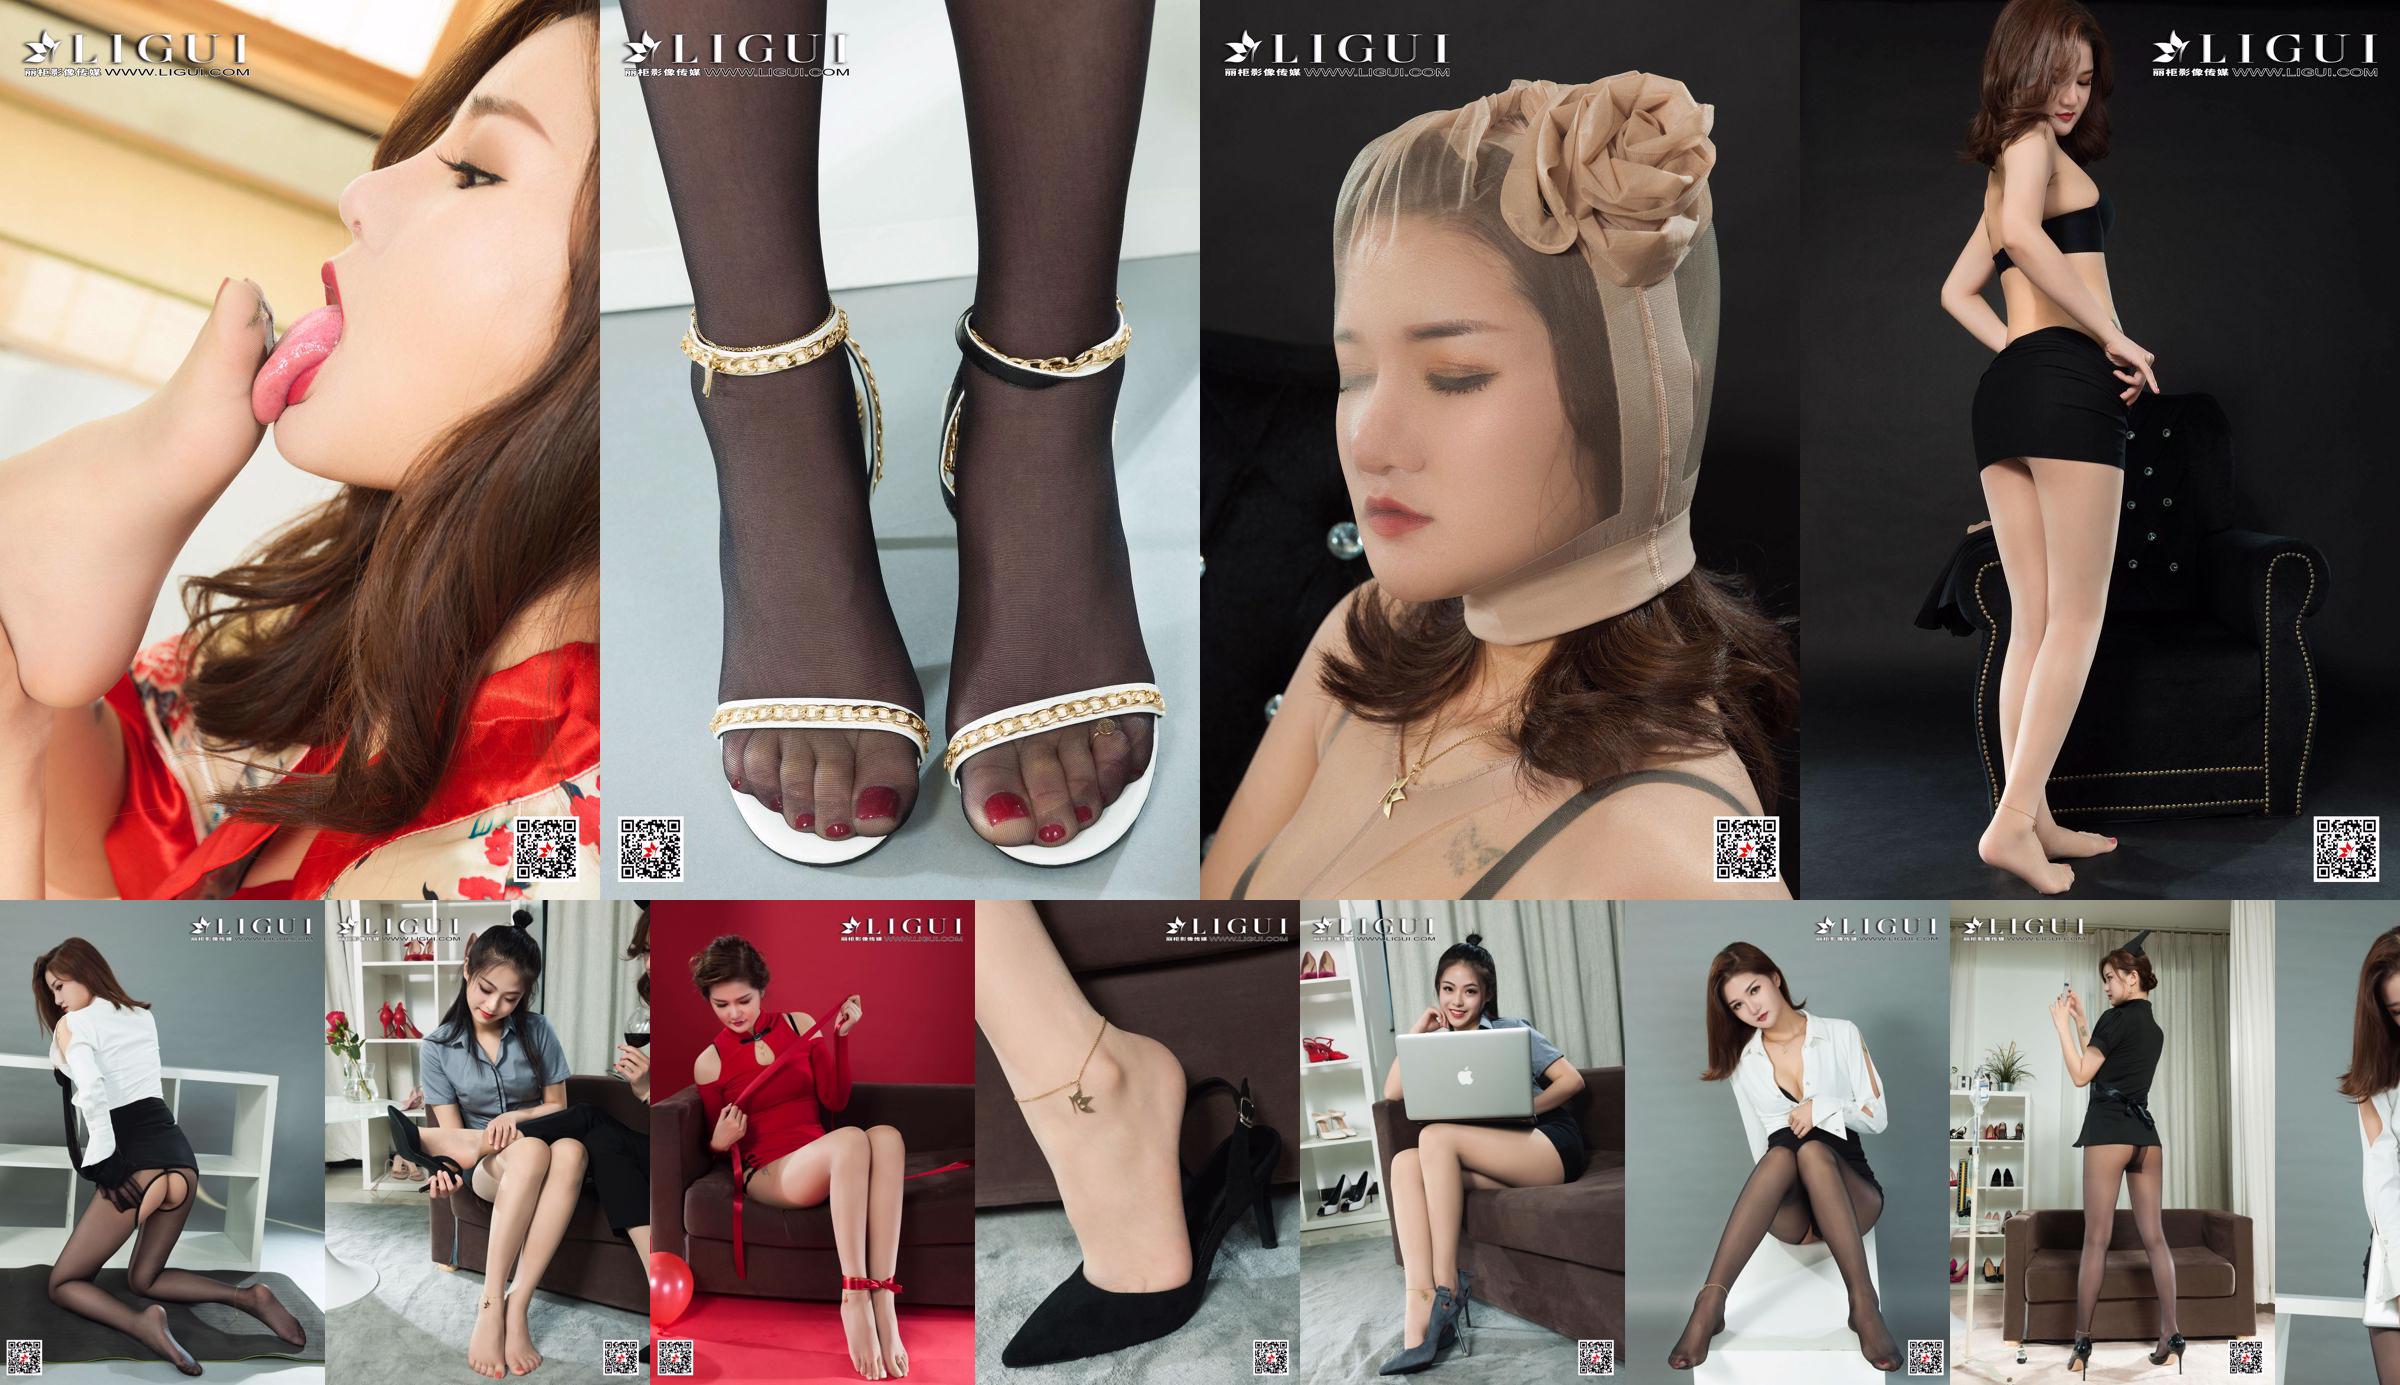 [丽柜Ligui] Network Beauty Model Wen Rui & Pandora No.e4e4e5 Page 3